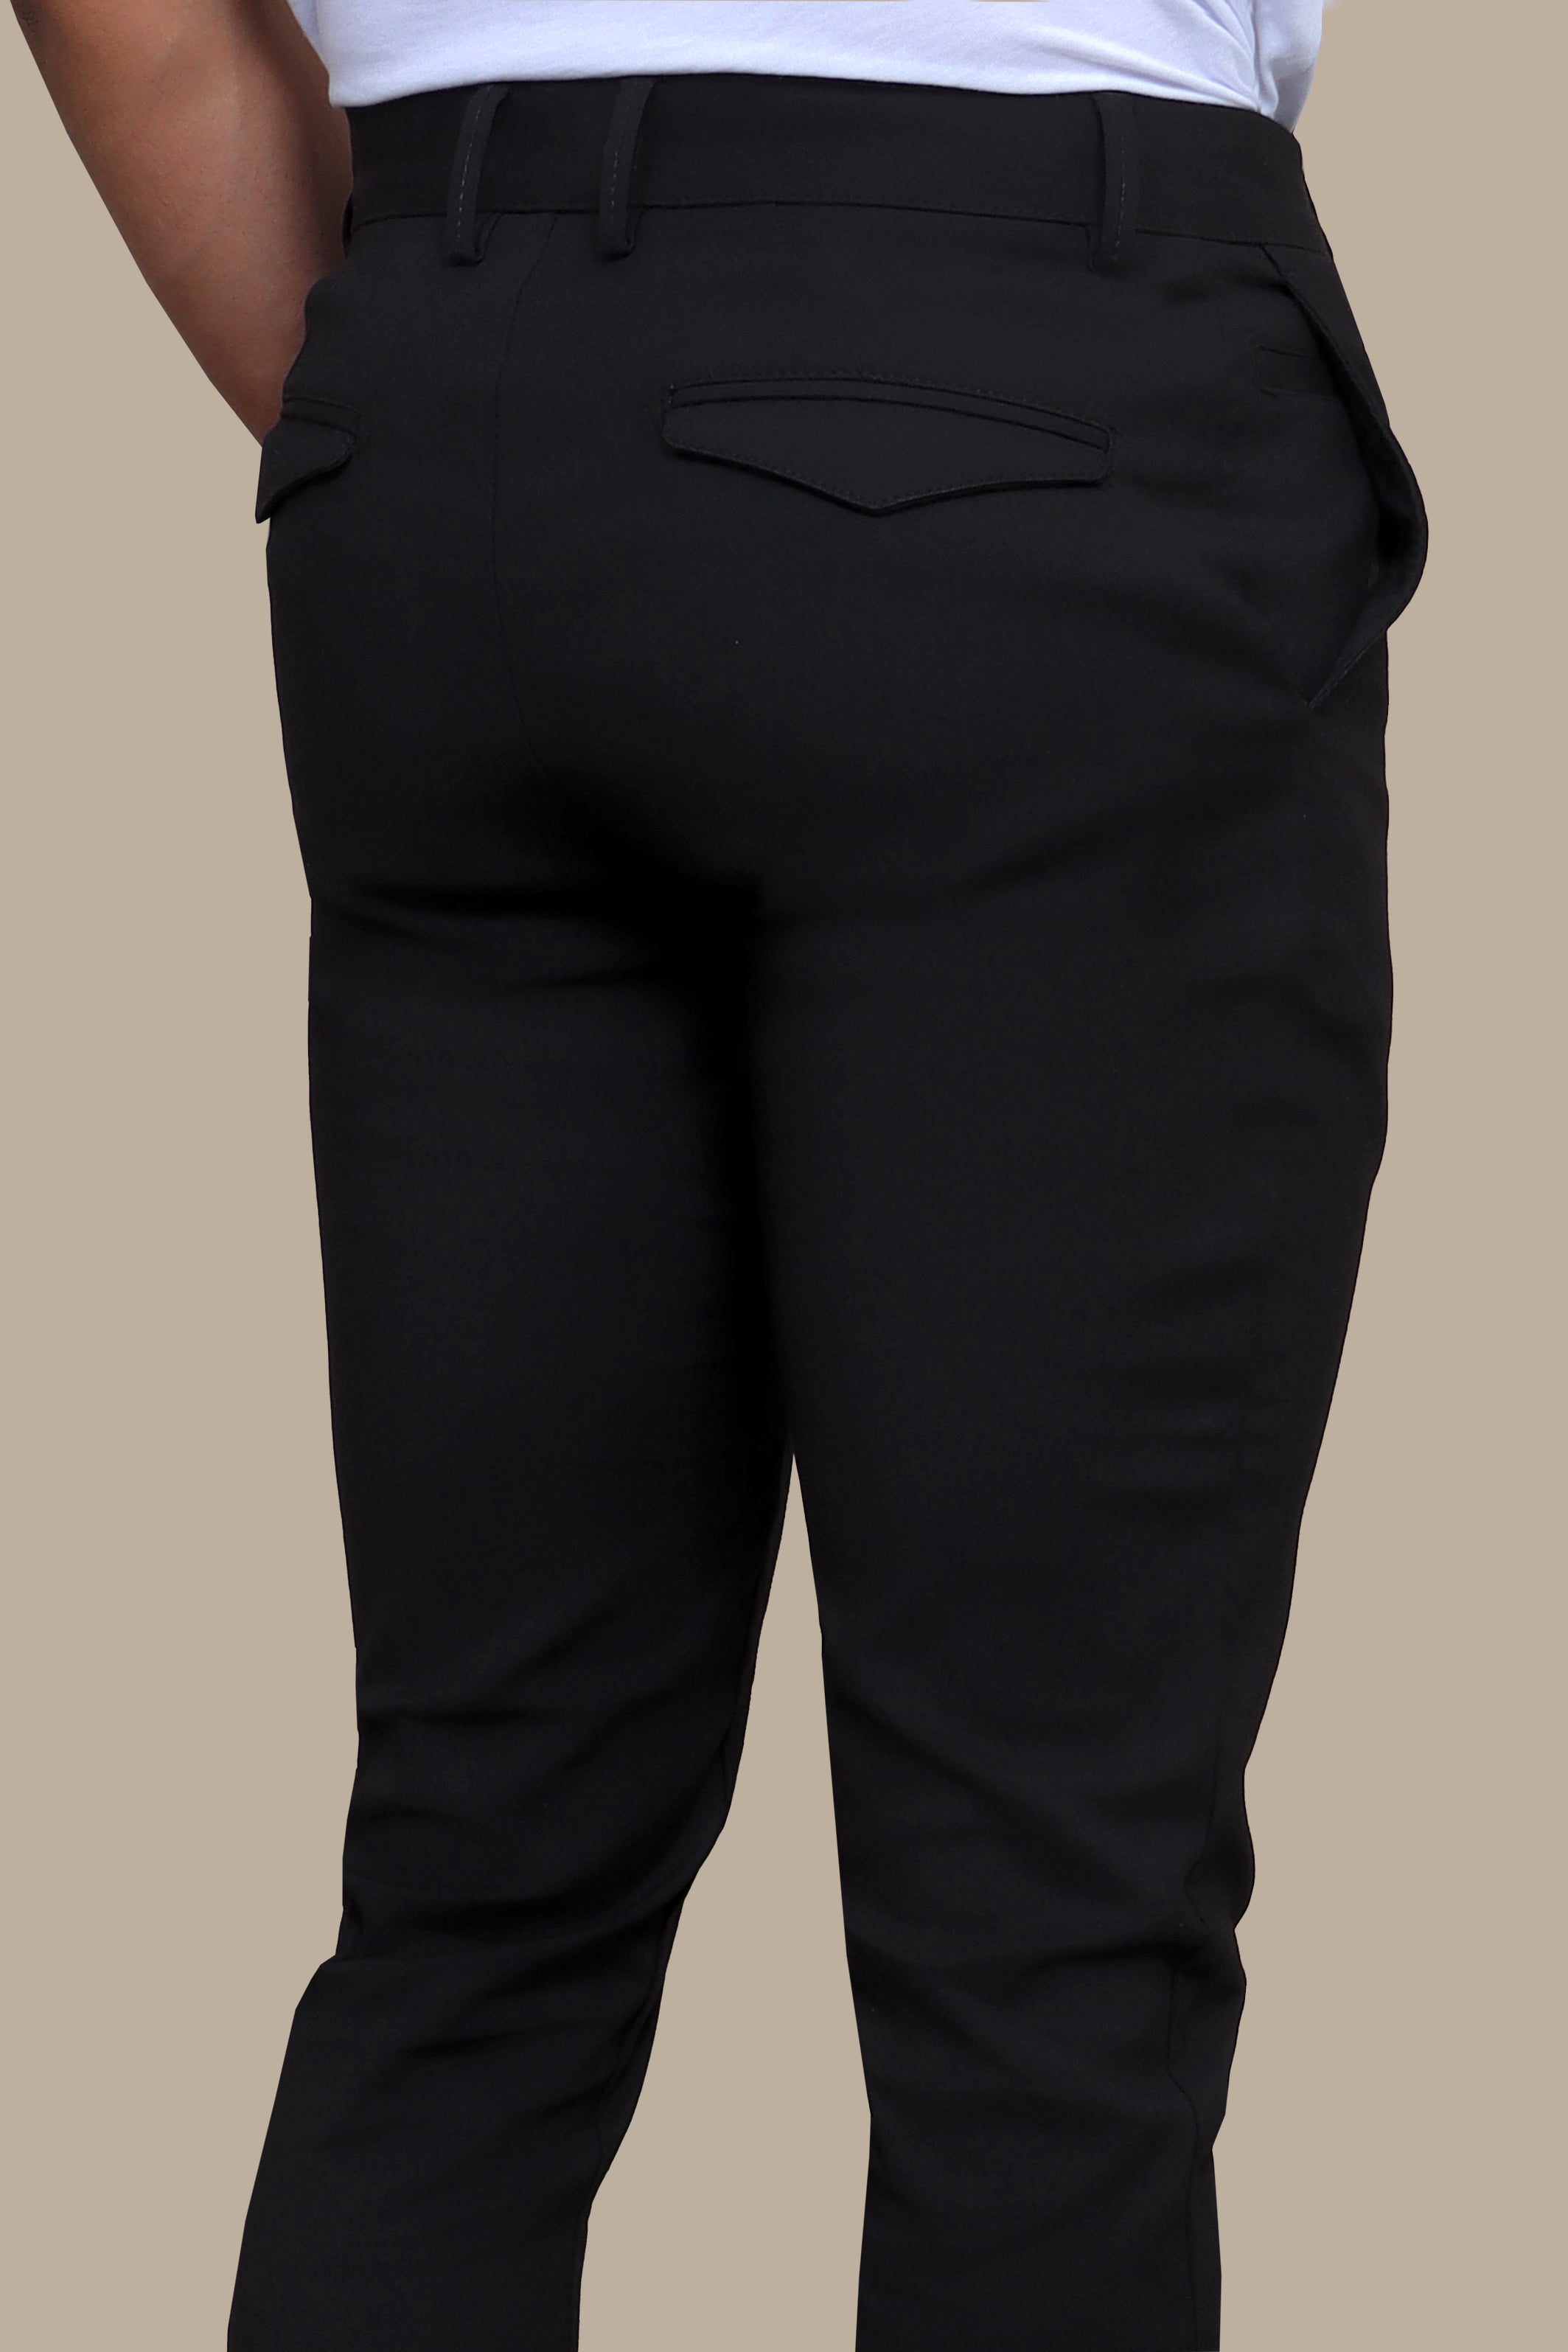 Black Lycra Fashion Trouser